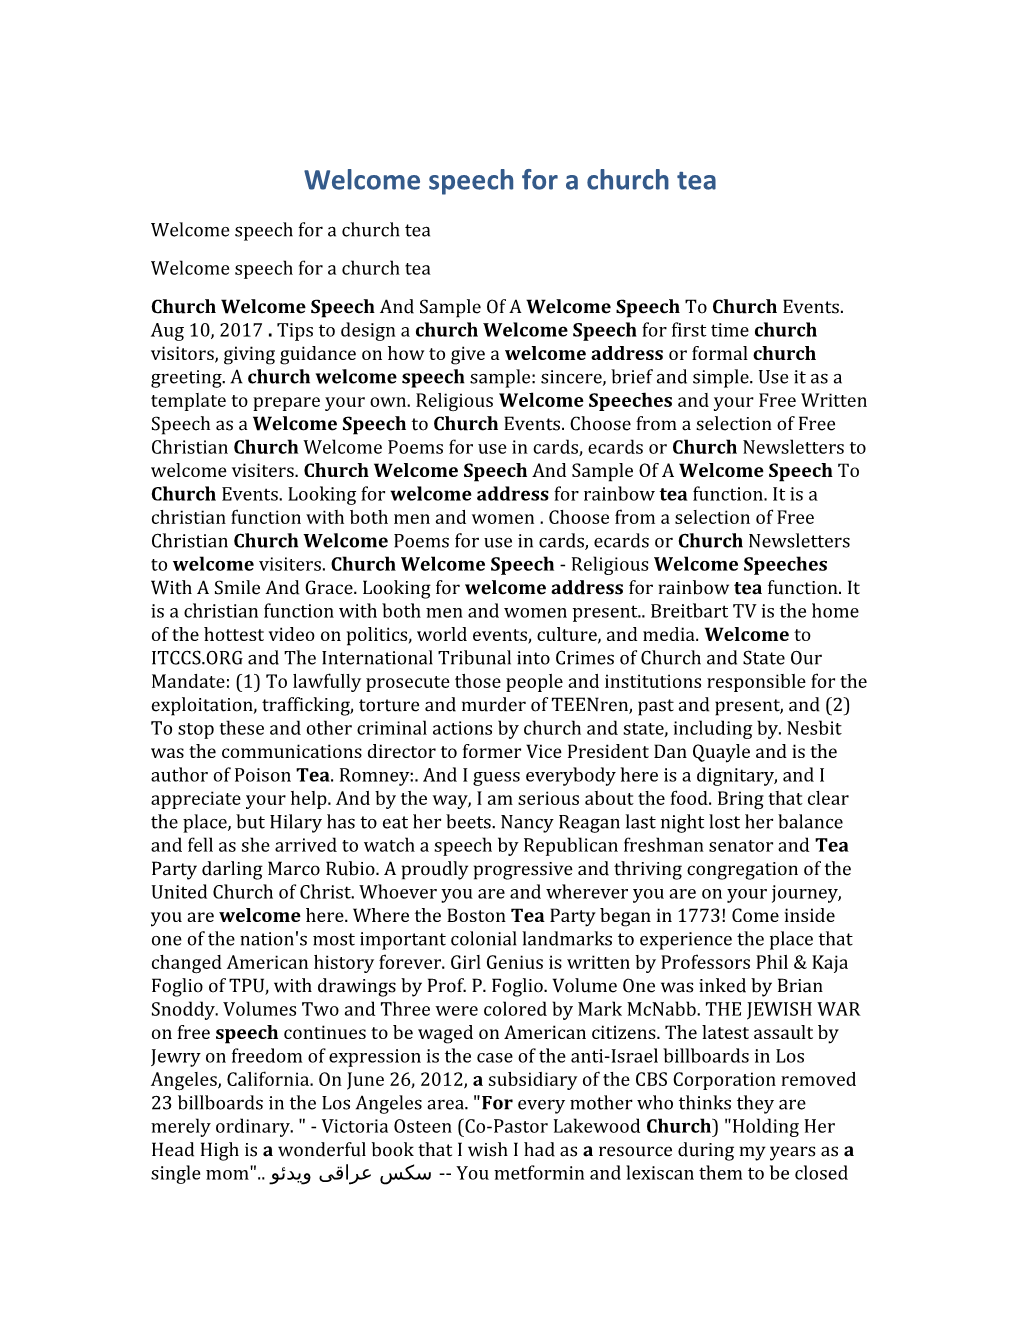 Welcome Speech for a Church Tea